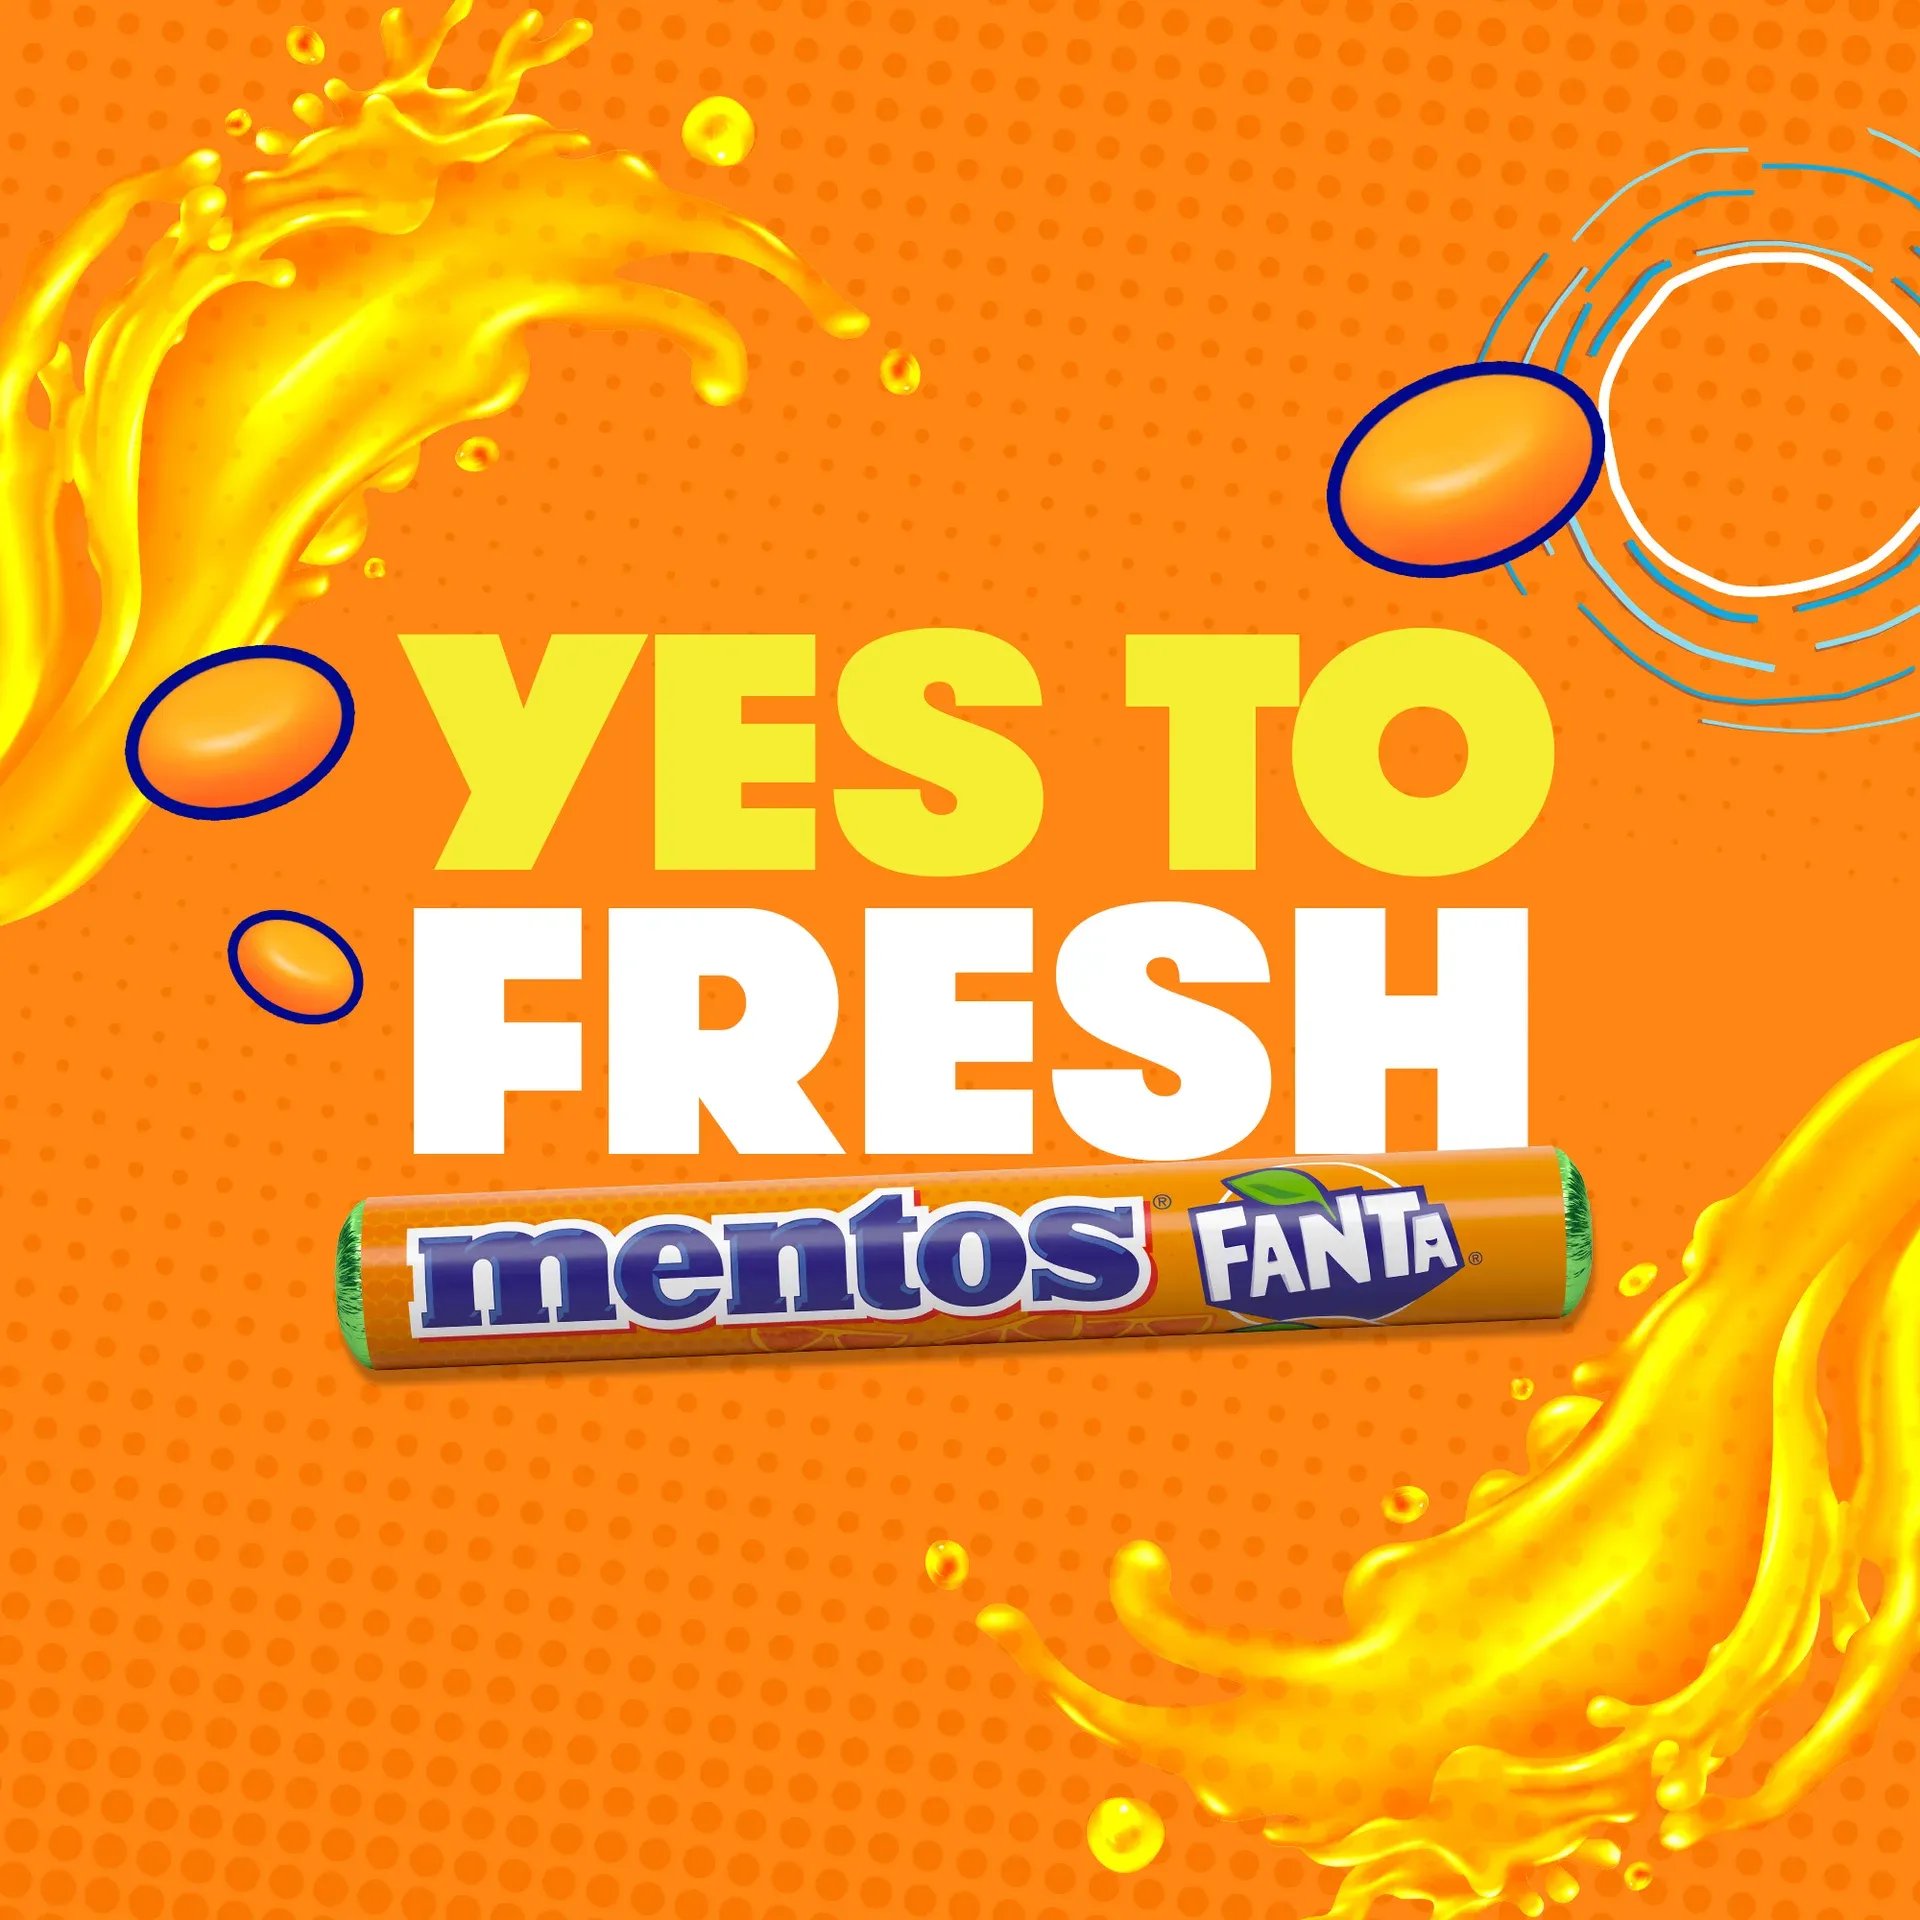 Mentos und Fanta, eine Kombination voller Spaß! Diese Limited Edition sorgt für einen fantastisch frischen Geschmack! Eines der beliebtesten Erfrischungsgetränke der Welt, jetzt in köstlichen Mentos-Kaudragees. Nur für kurze Zeit erhältlich, also schnapp sie dir, solange sie verfügbar sind!